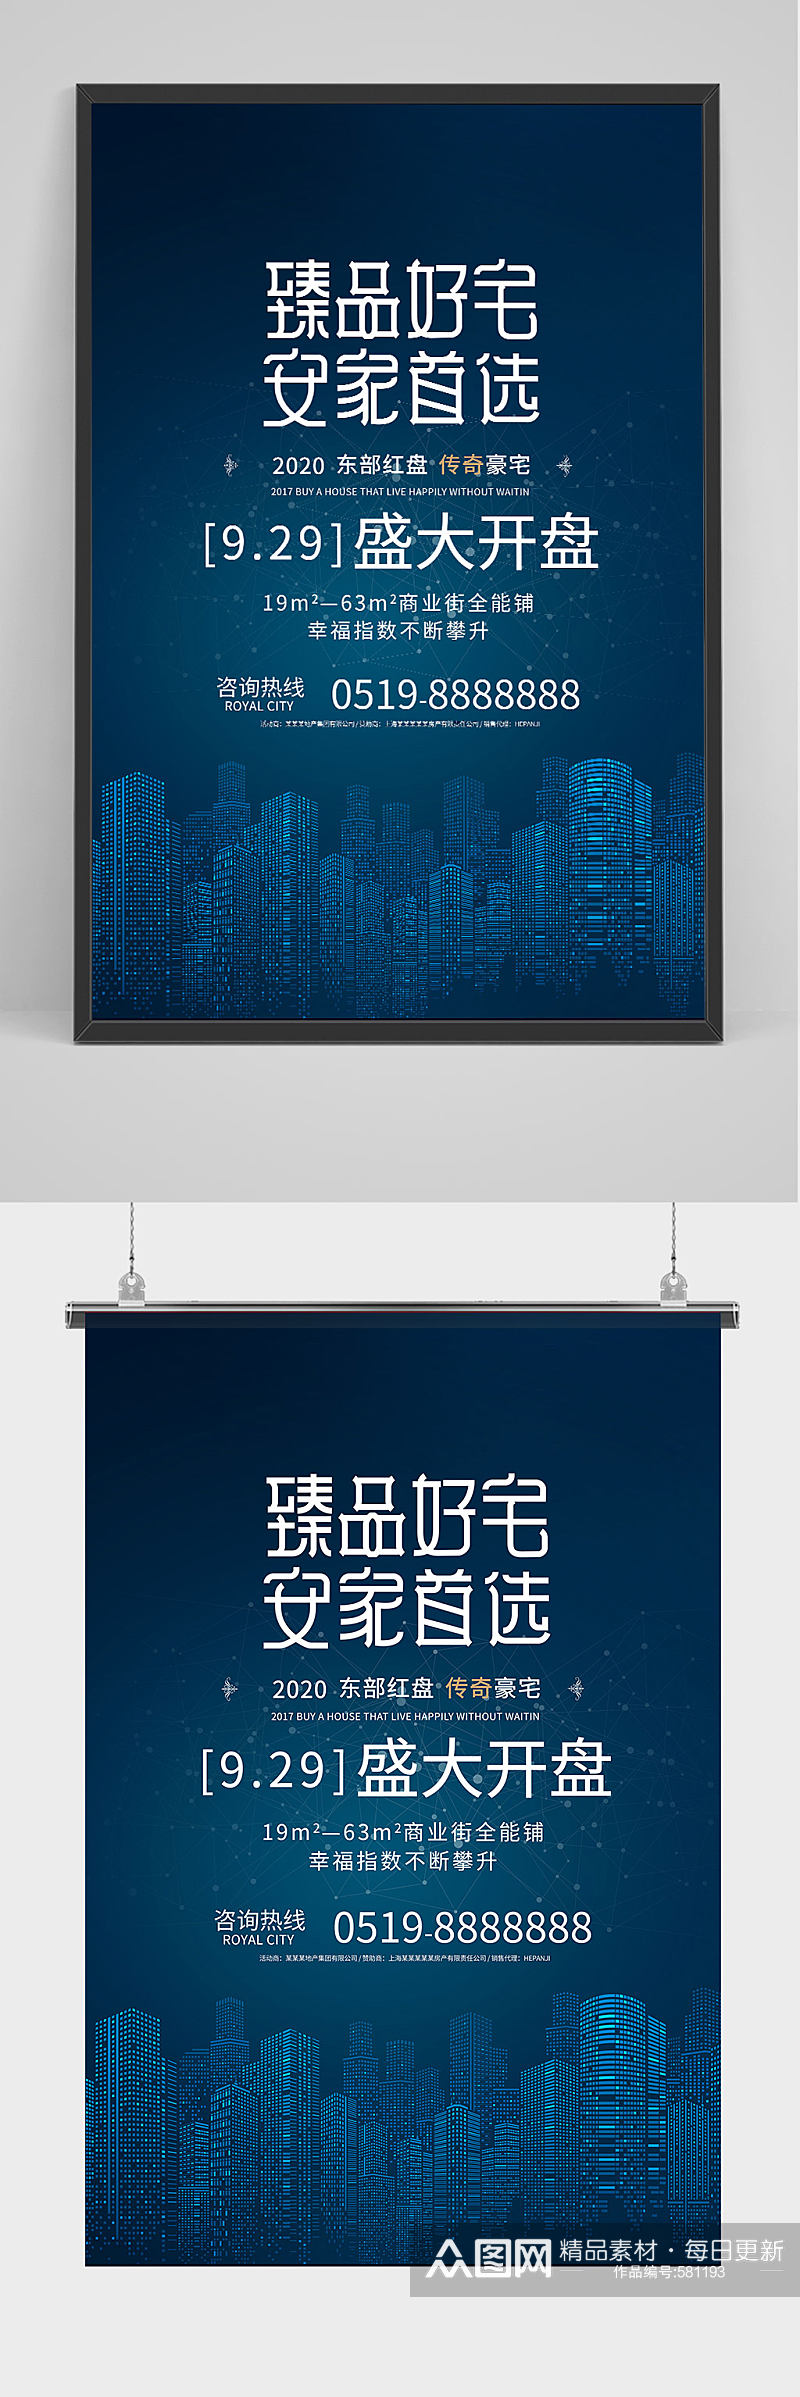 蓝色发光城市开盘广告新中式销售房地产海报素材